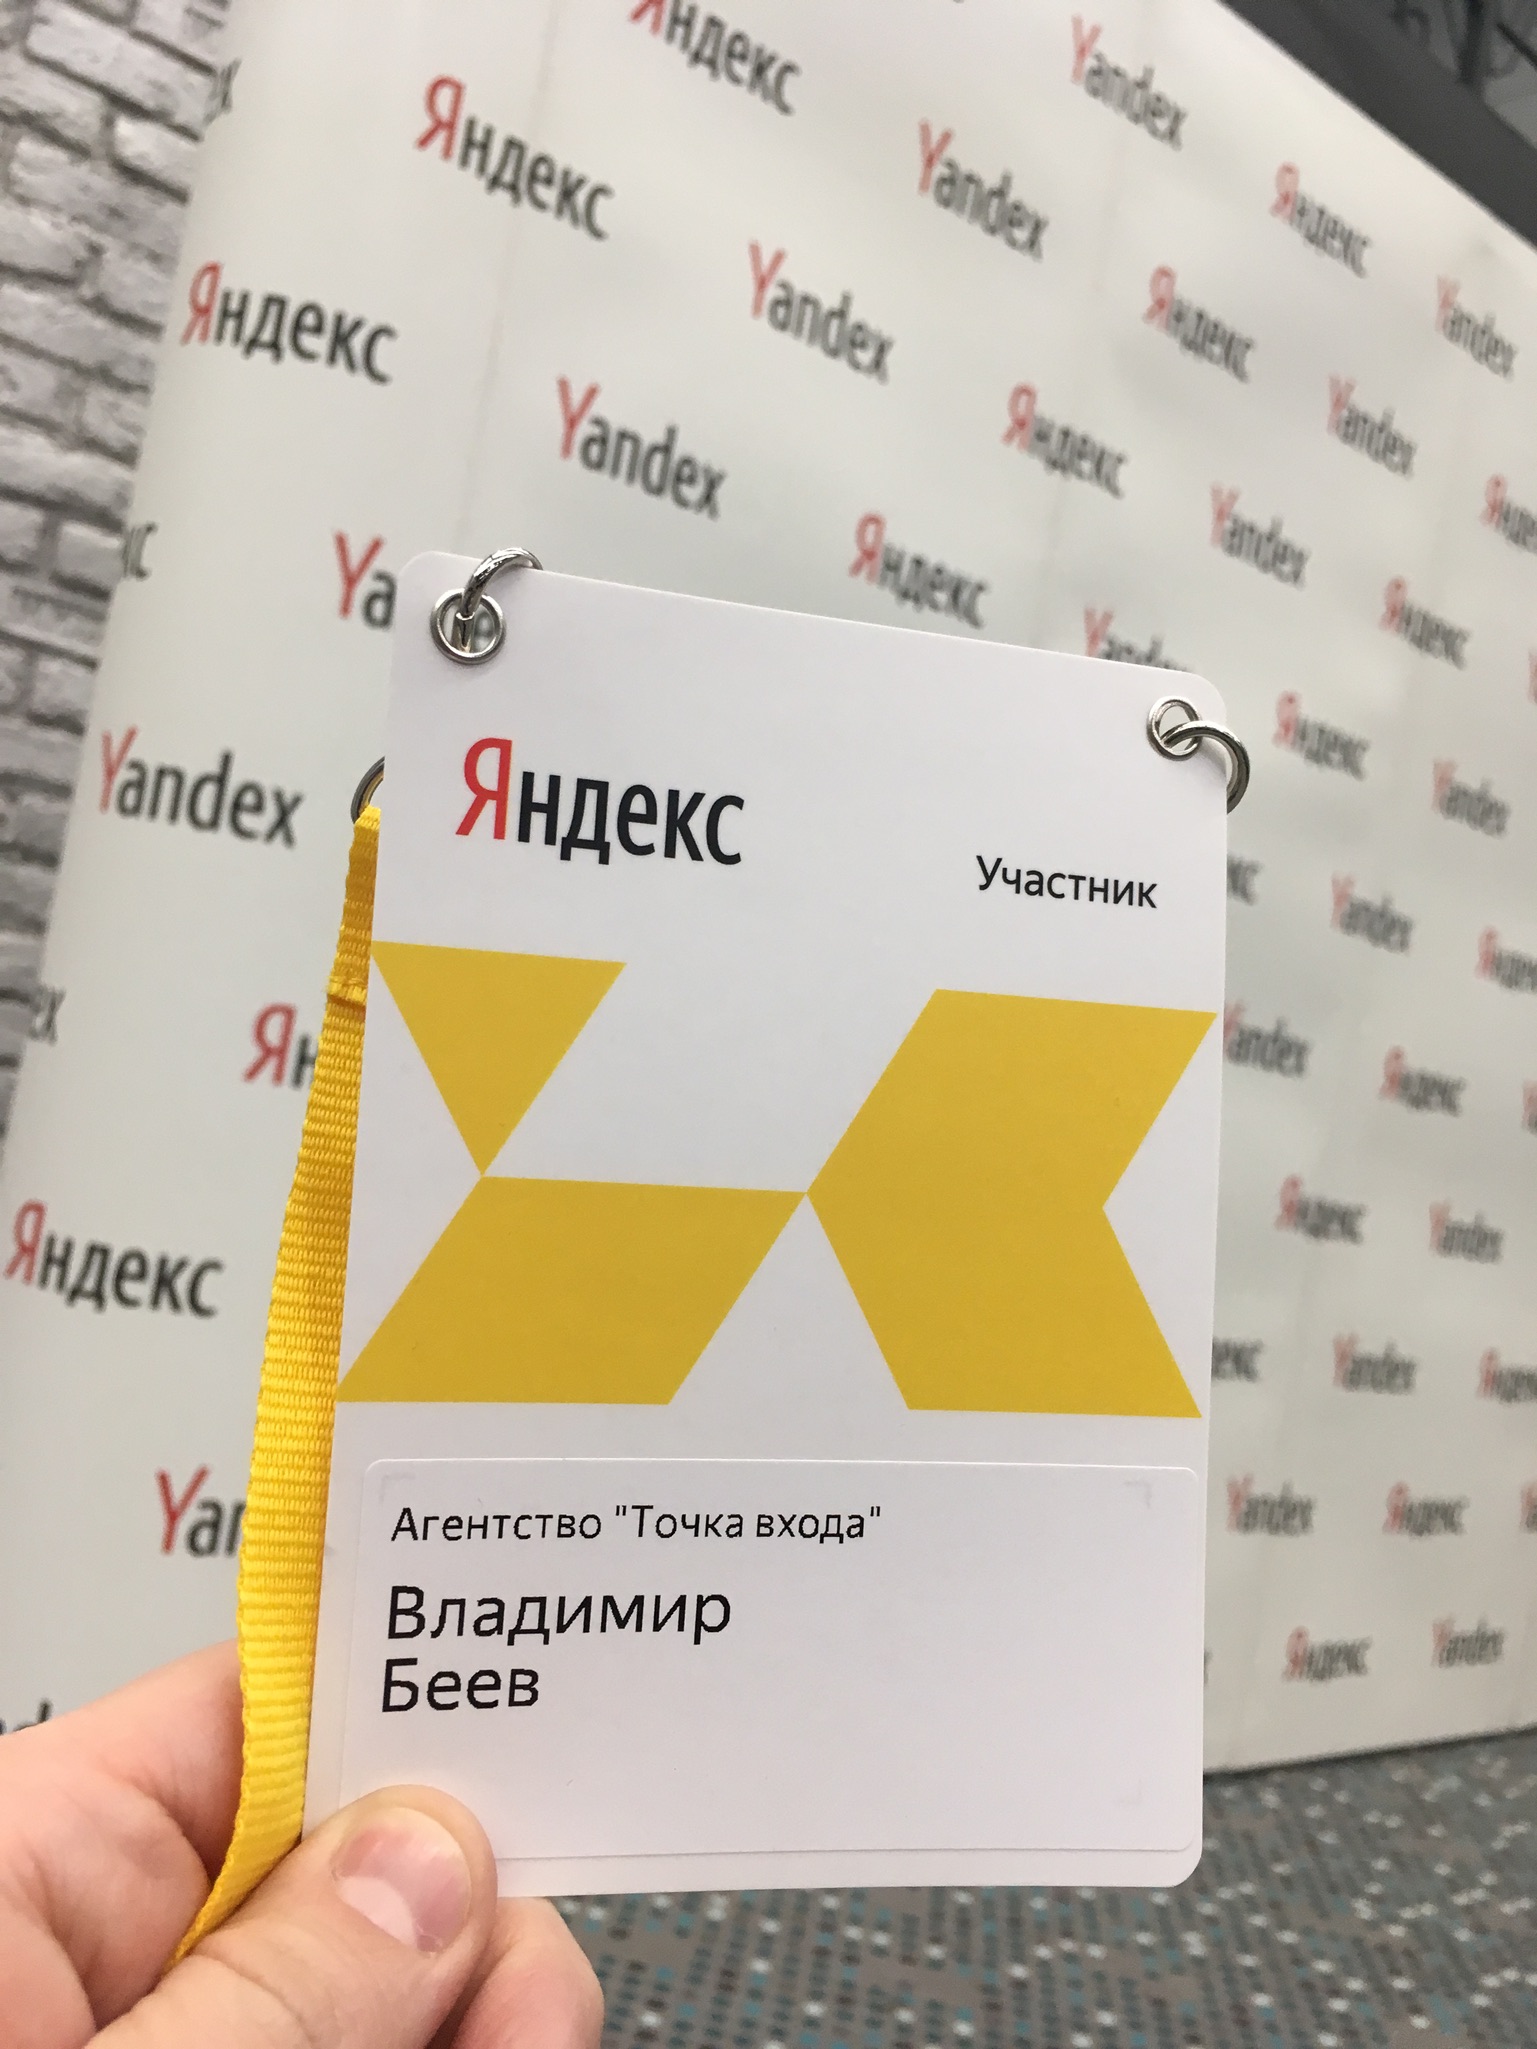 Семинар Яндекса в Ростове-на-Дону. Рекламные технологии для бизнеса